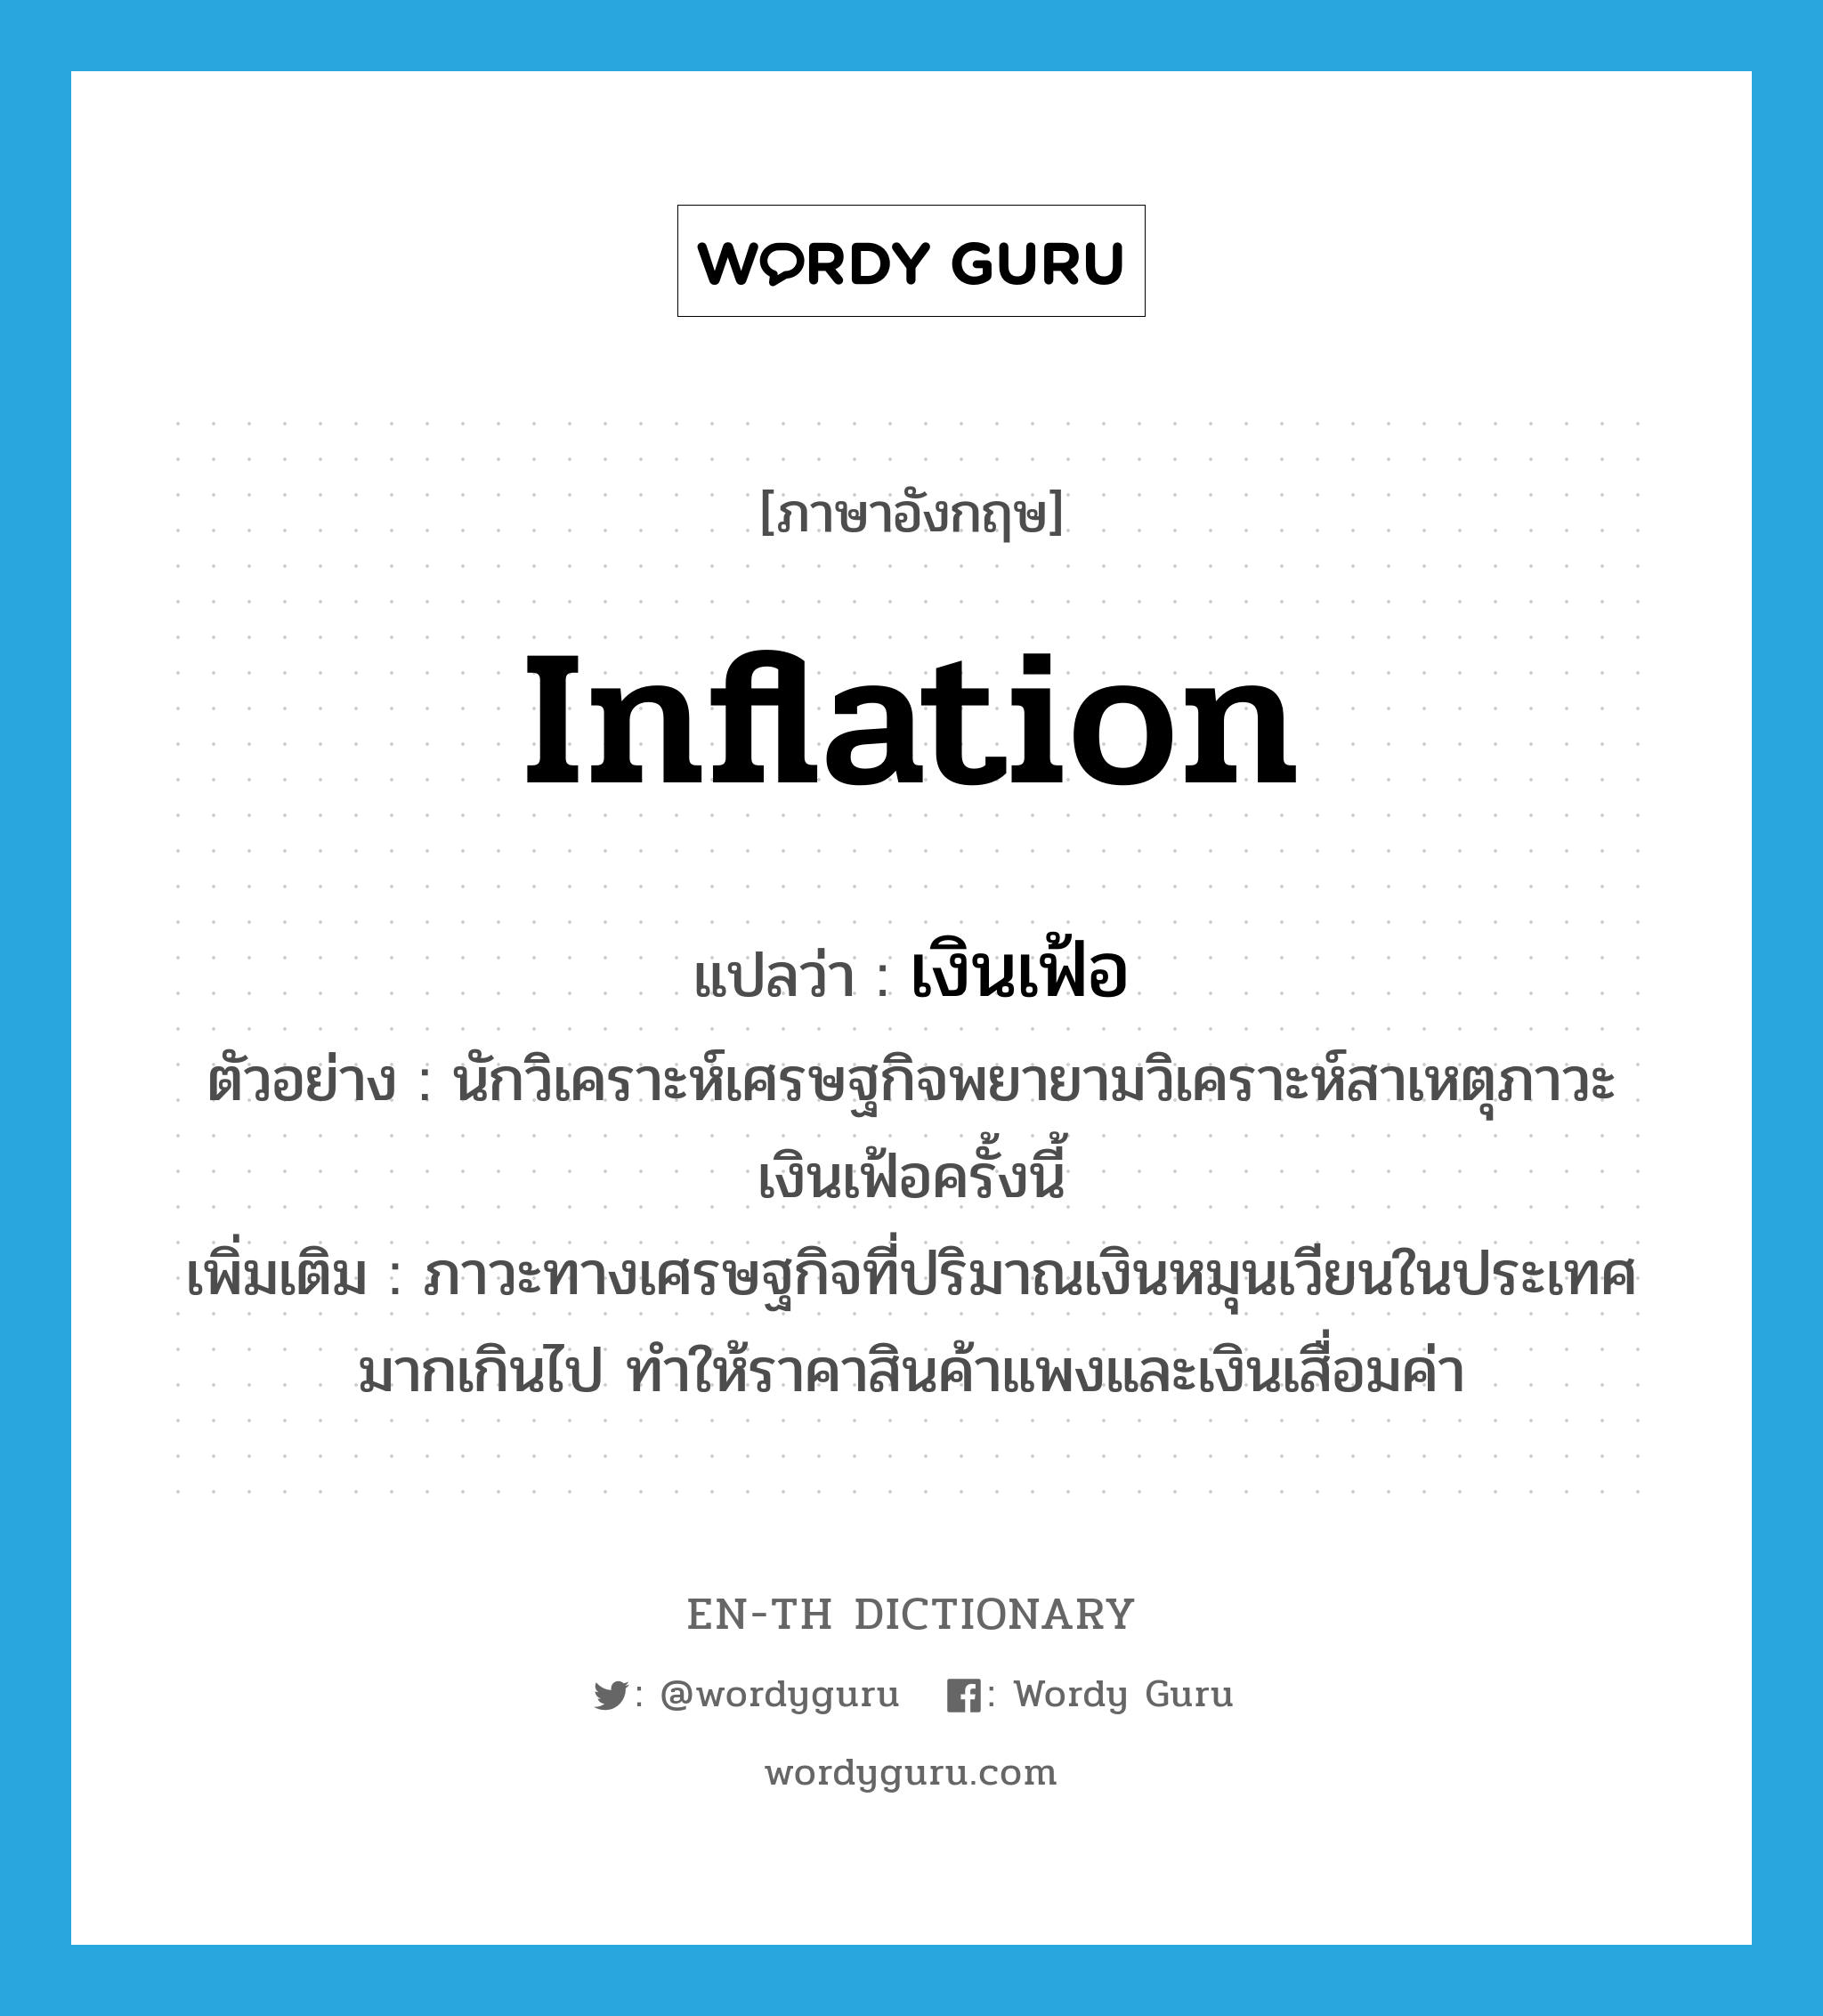 inflation แปลว่า?, คำศัพท์ภาษาอังกฤษ inflation แปลว่า เงินเฟ้อ ประเภท N ตัวอย่าง นักวิเคราะห์เศรษฐกิจพยายามวิเคราะห์สาเหตุภาวะเงินเฟ้อครั้งนี้ เพิ่มเติม ภาวะทางเศรษฐกิจที่ปริมาณเงินหมุนเวียนในประเทศมากเกินไป ทำให้ราคาสินค้าแพงและเงินเสื่อมค่า หมวด N